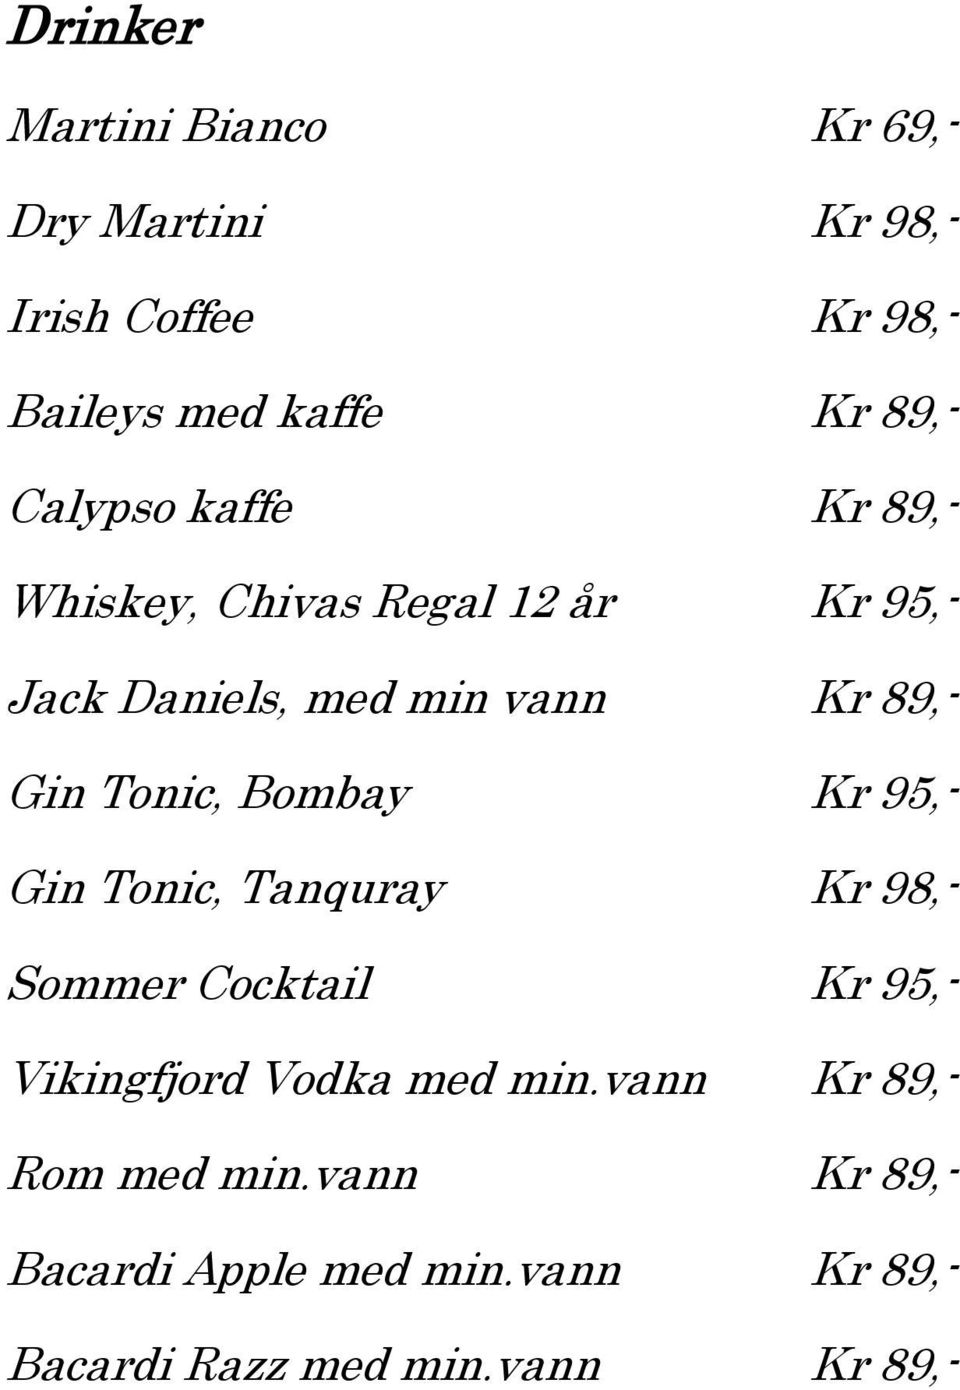 Tonic, Bombay Kr 95,- Gin Tonic, Tanquray Kr 98,- Sommer Cocktail Kr 95,- Vikingfjord Vodka med min.